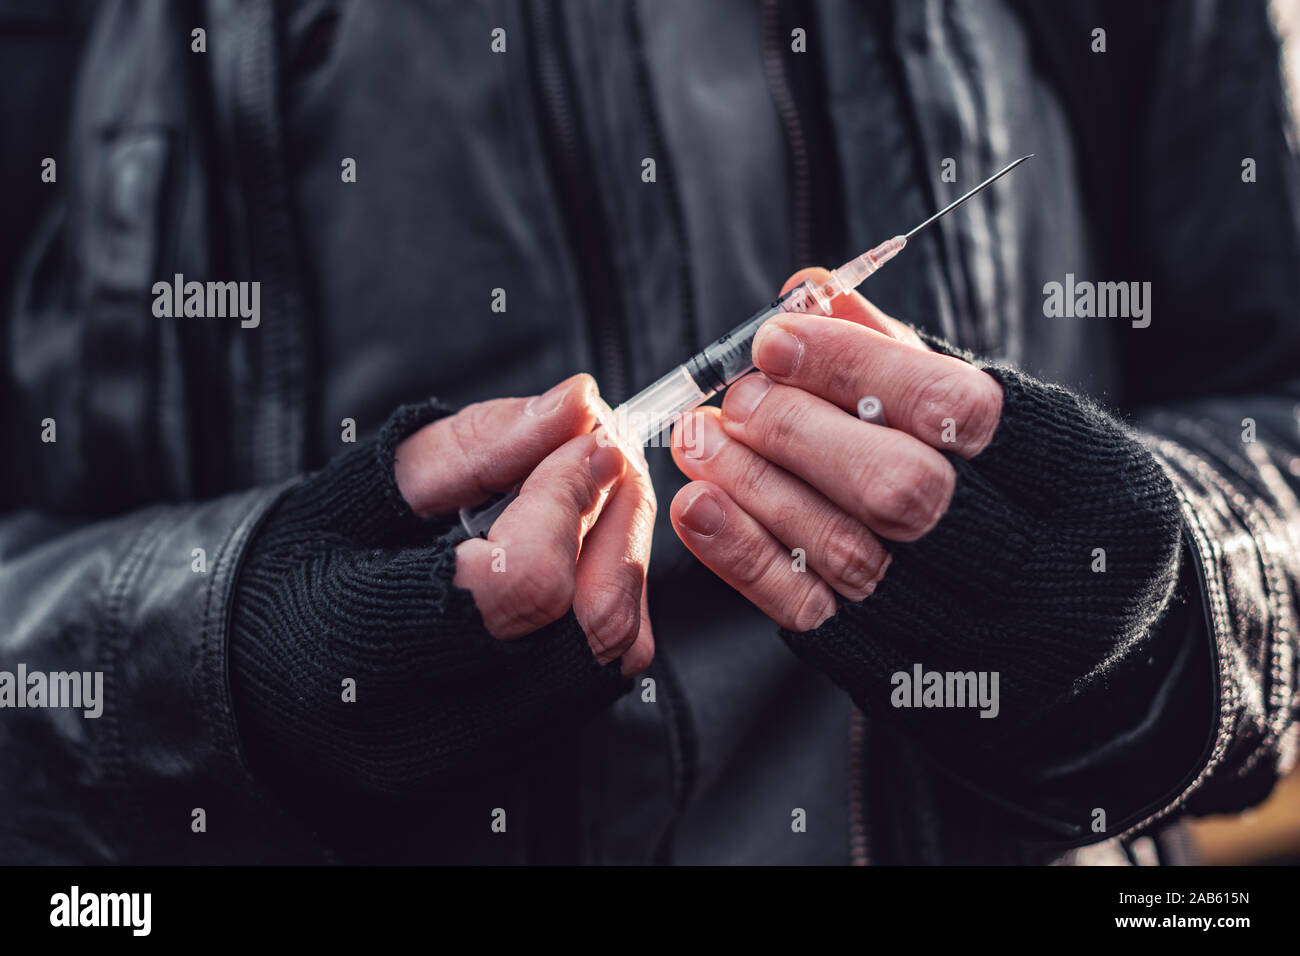 Le toxicomane à l'héroïne d'une seringue, Close up of hands with selective focus Banque D'Images